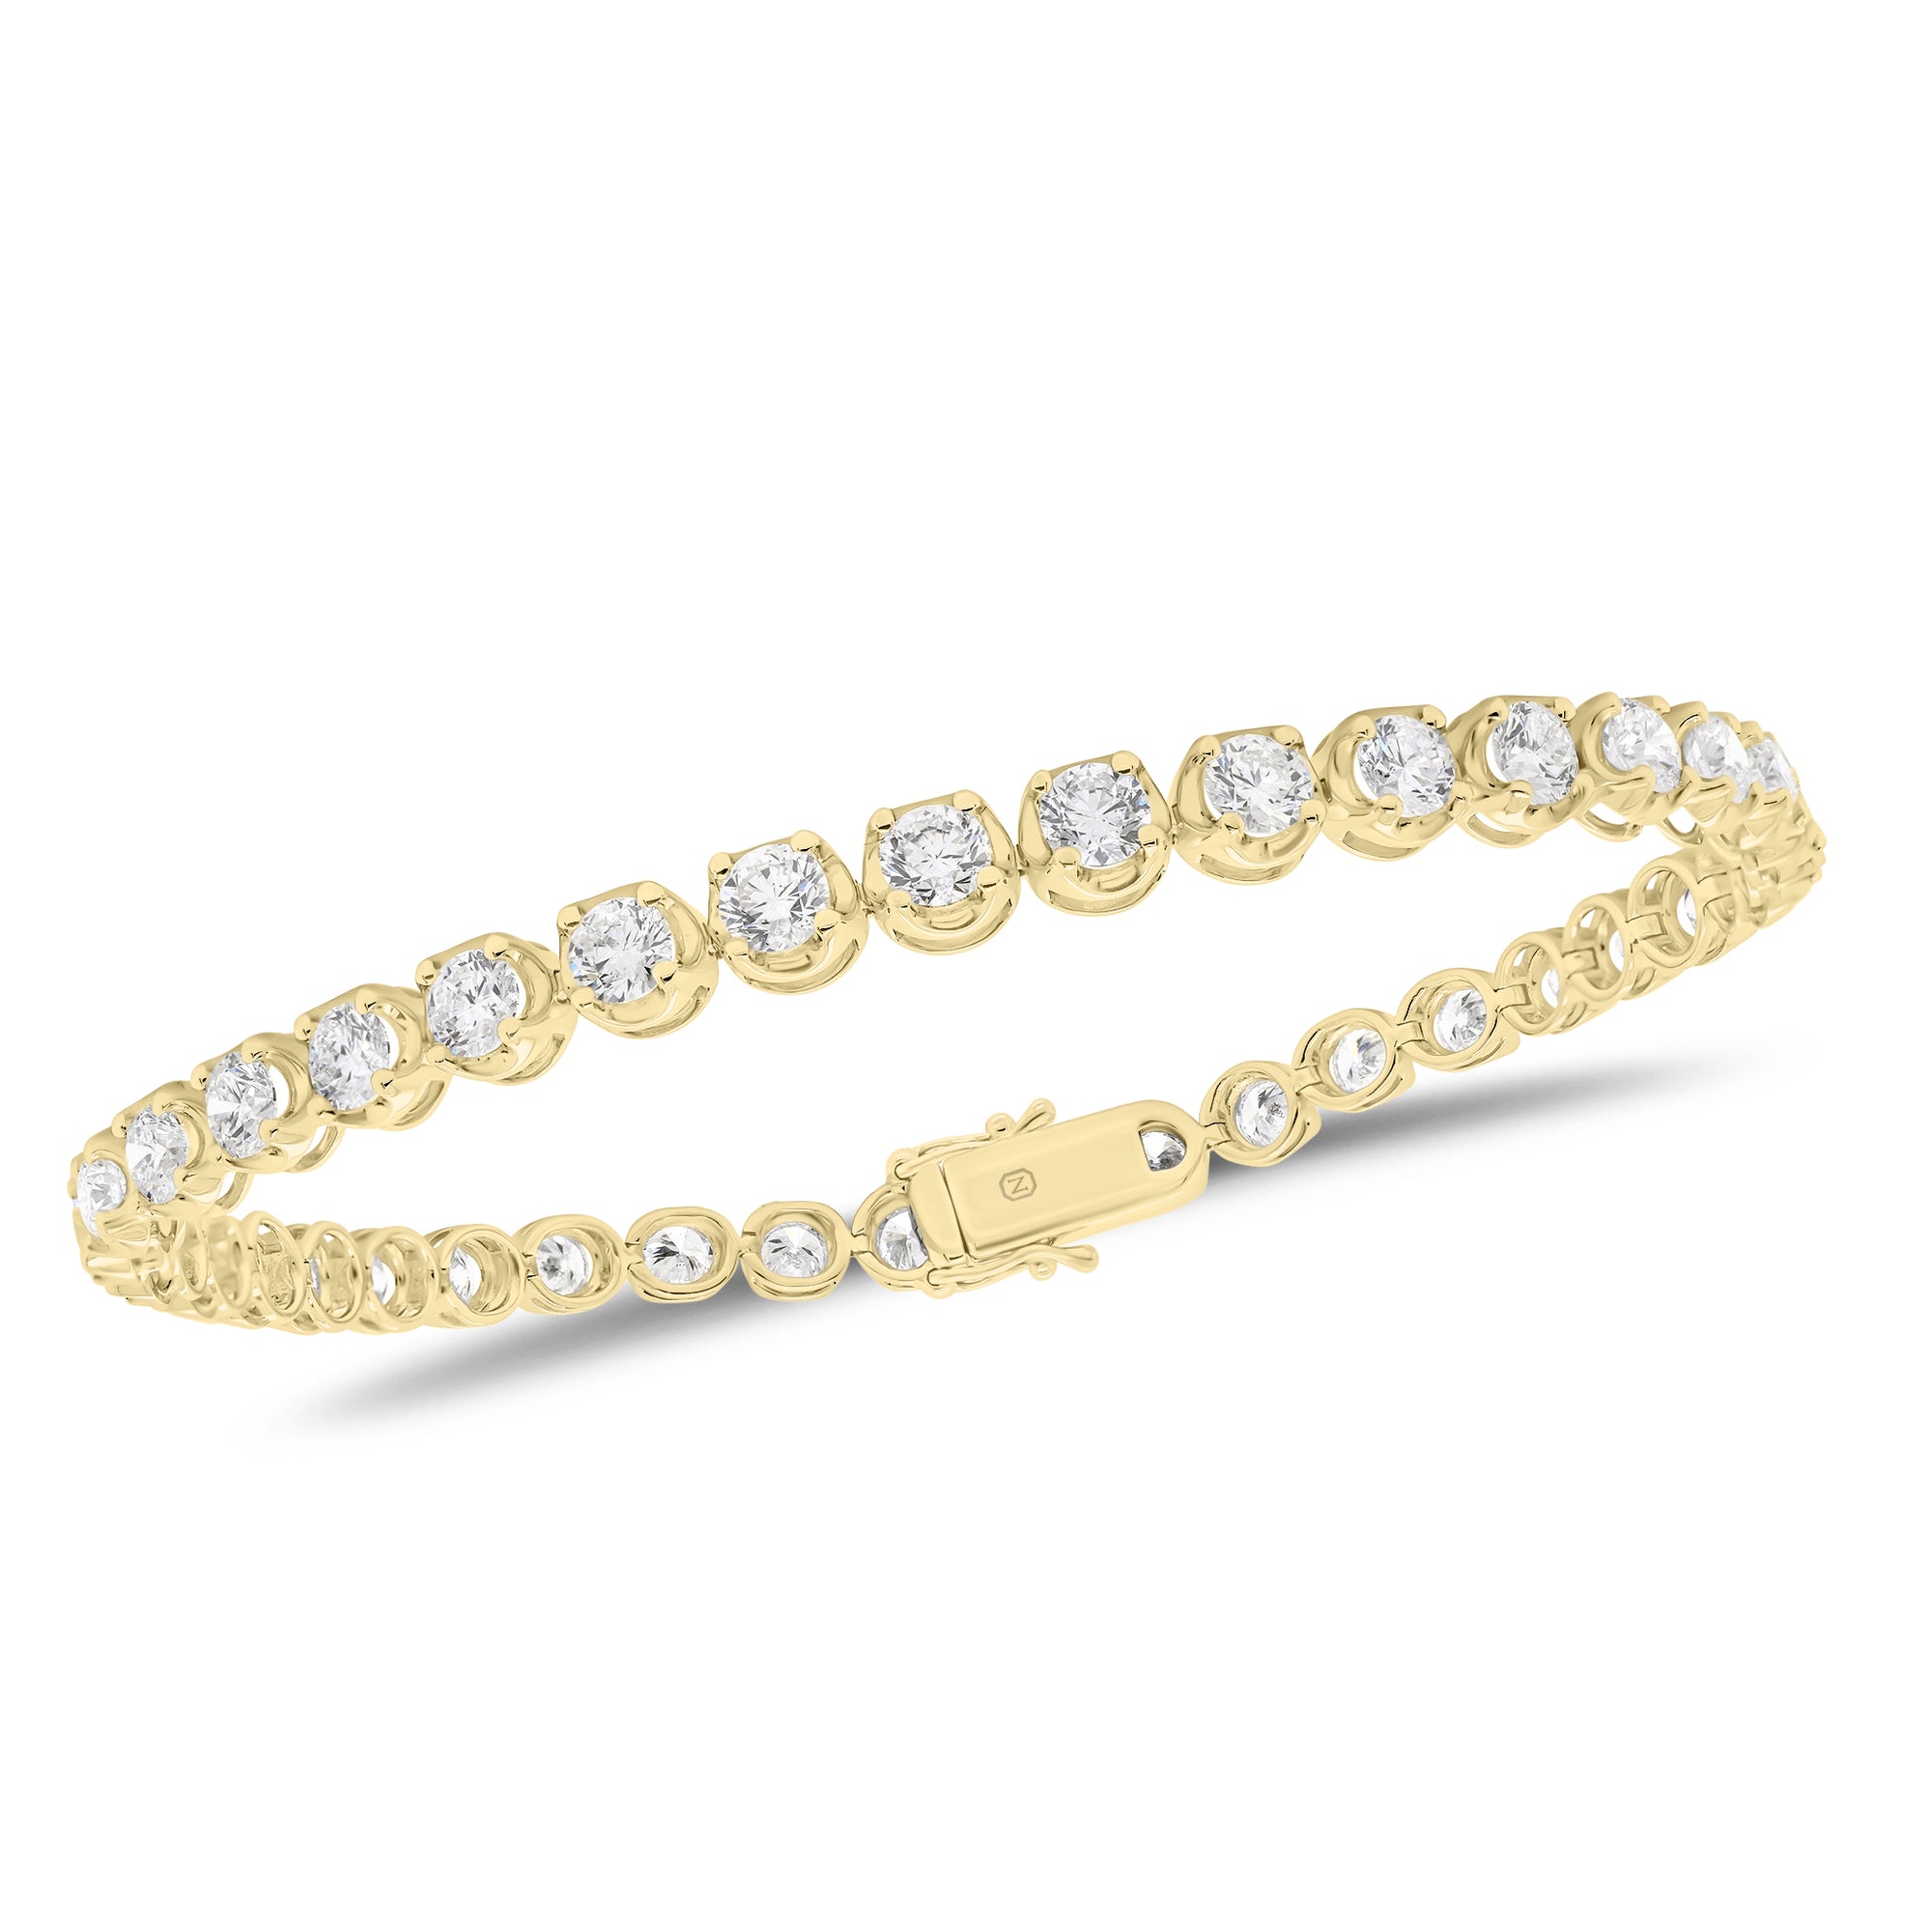 Diamond Large Tennis Bracelet -18K white gold weighing 10.40 grams -37 round prong-set diamonds totaling 6.28 carats